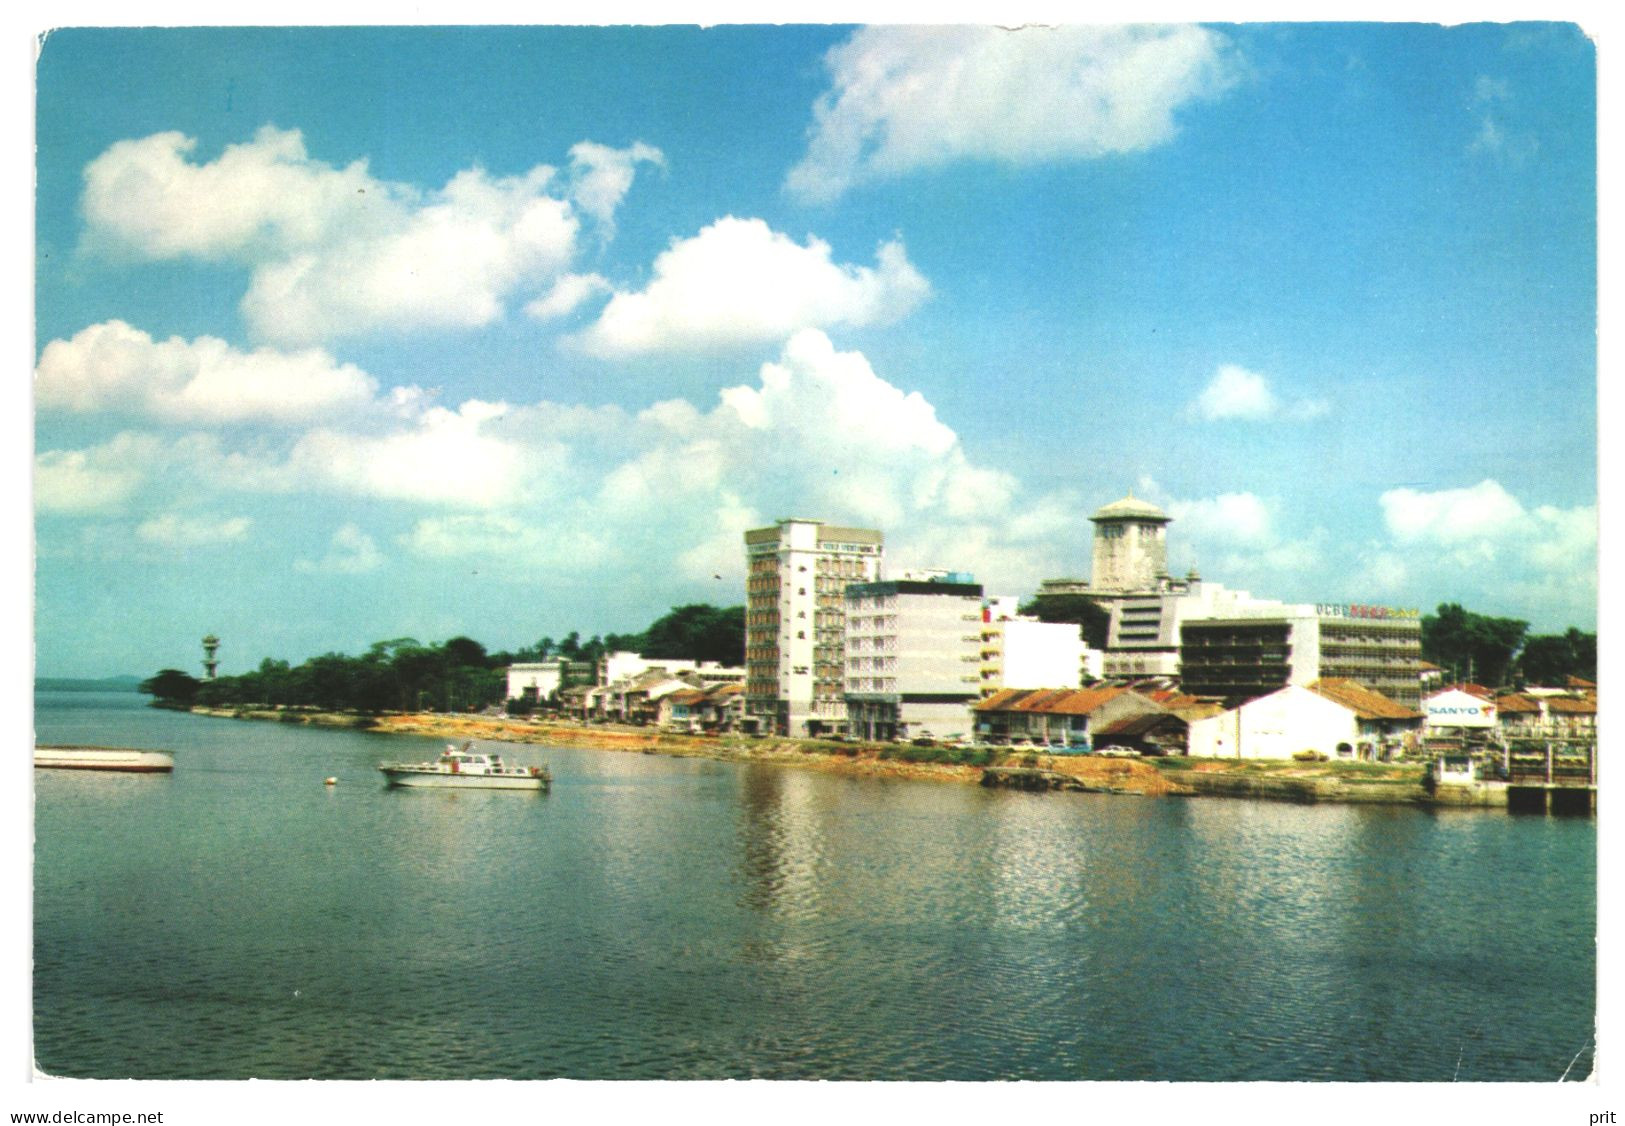 OCBC Building, Johore Bahru Water-front Jahore Strait Singapore 1970s Unused Postcard. Publisher S.W.Singapore - Singapur